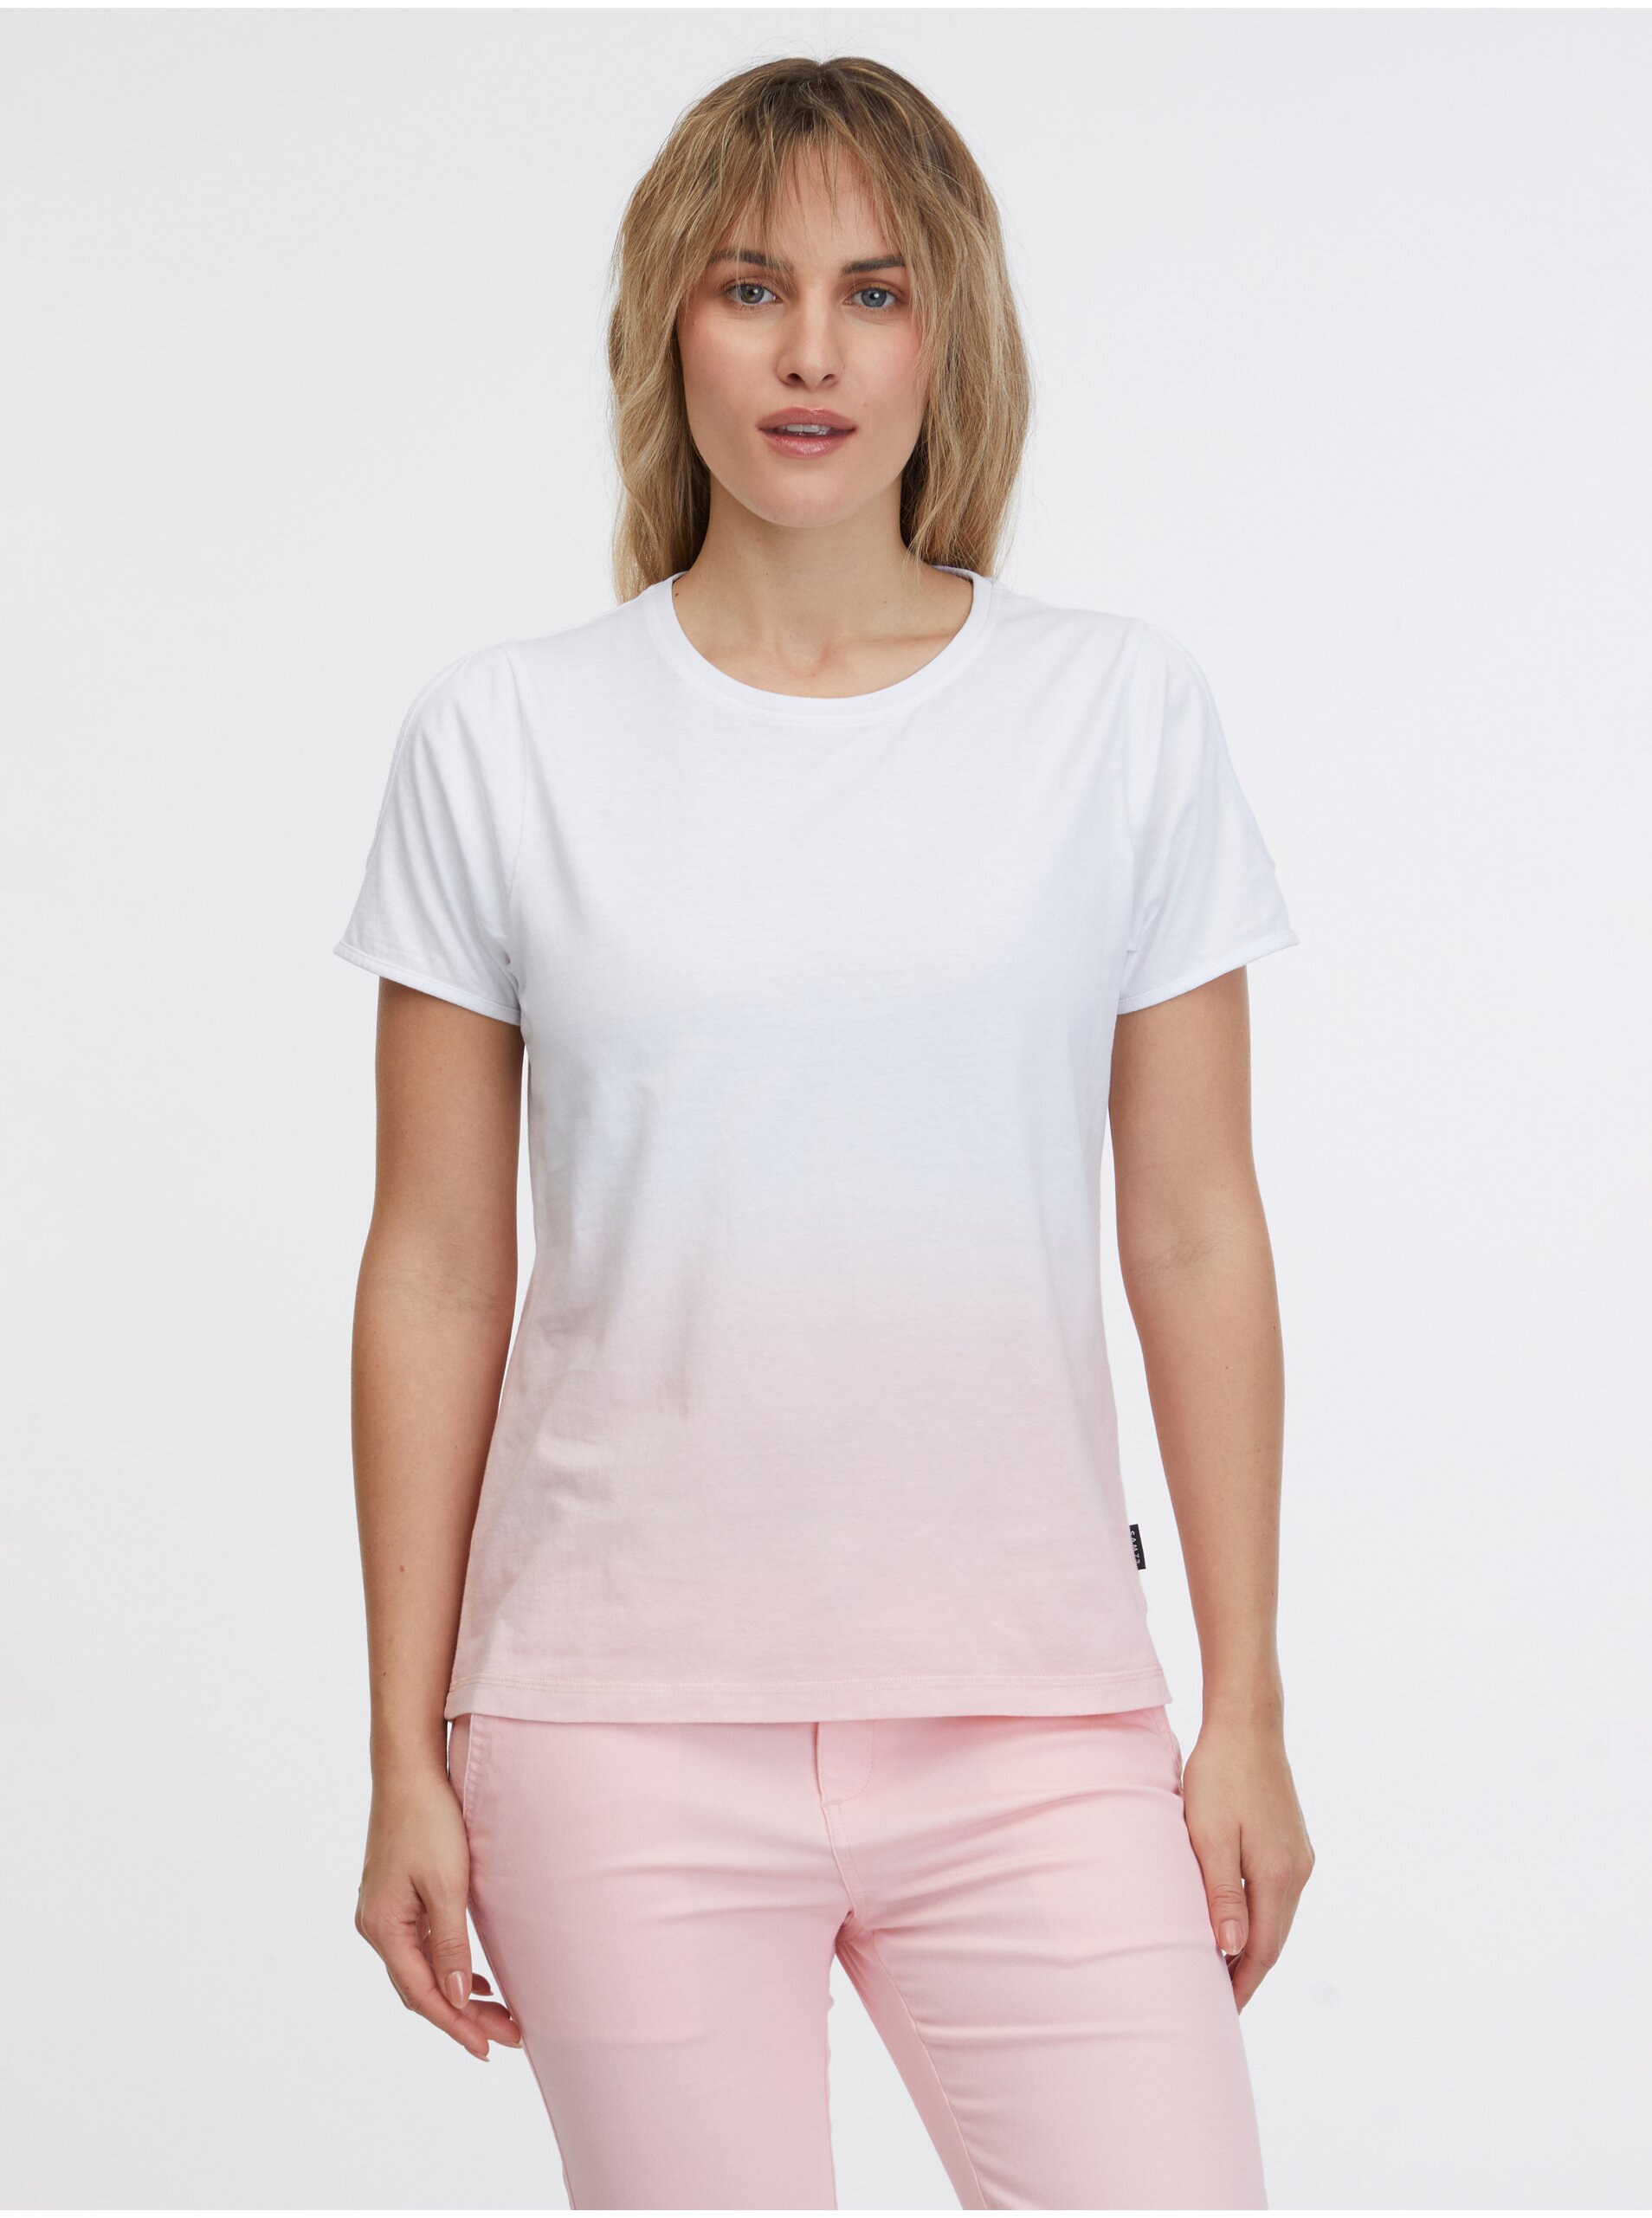 Lacno Ružovo-biele dámske tričko SAM 73 Dolores